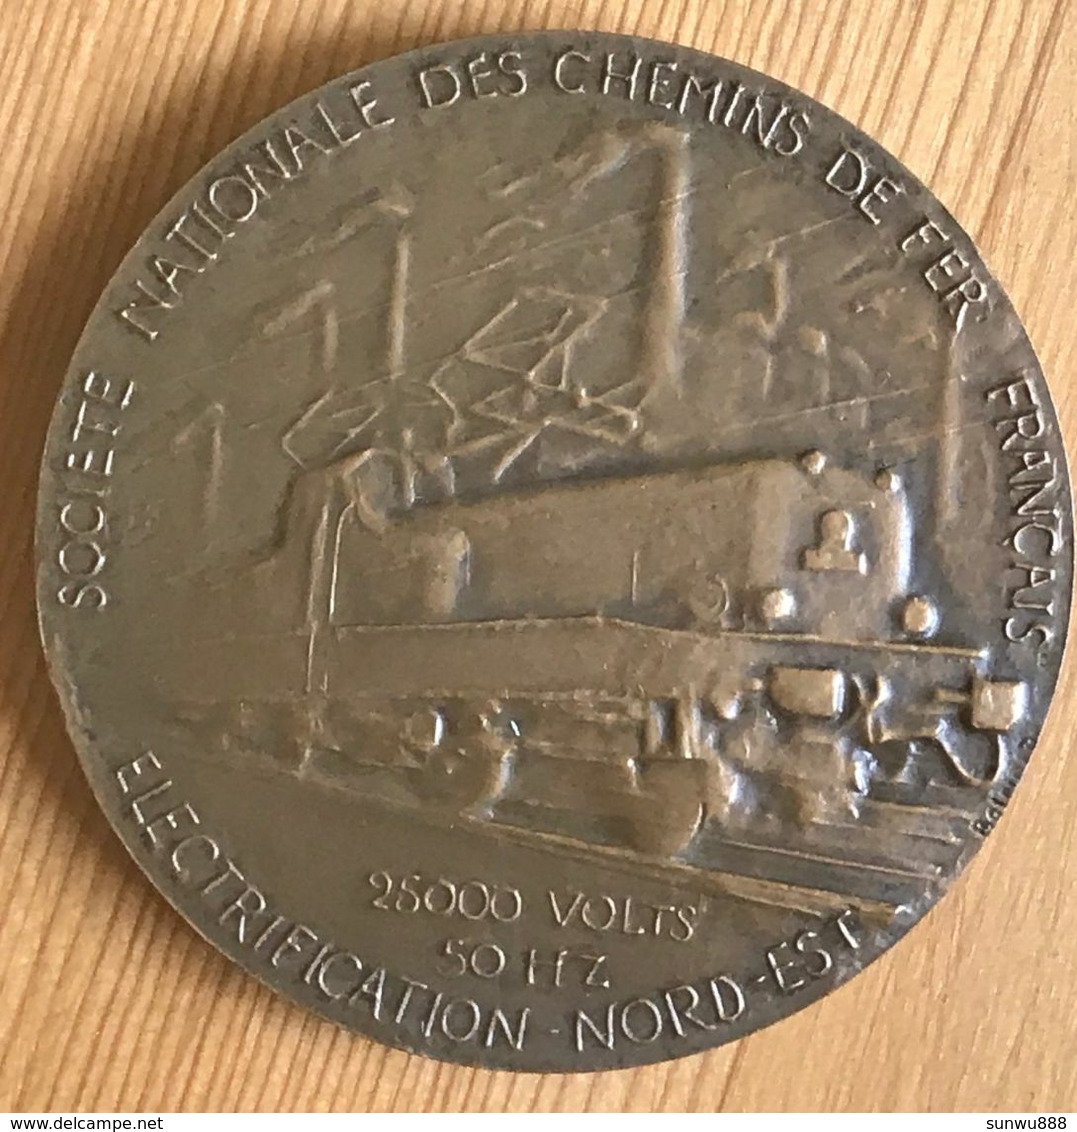 Médaille SNCF Electrification Nord-Est Belmondo 1955 Superbe Etat Bronze (prix Fixe Envoi Recommandé Inclus) - Professionals / Firms